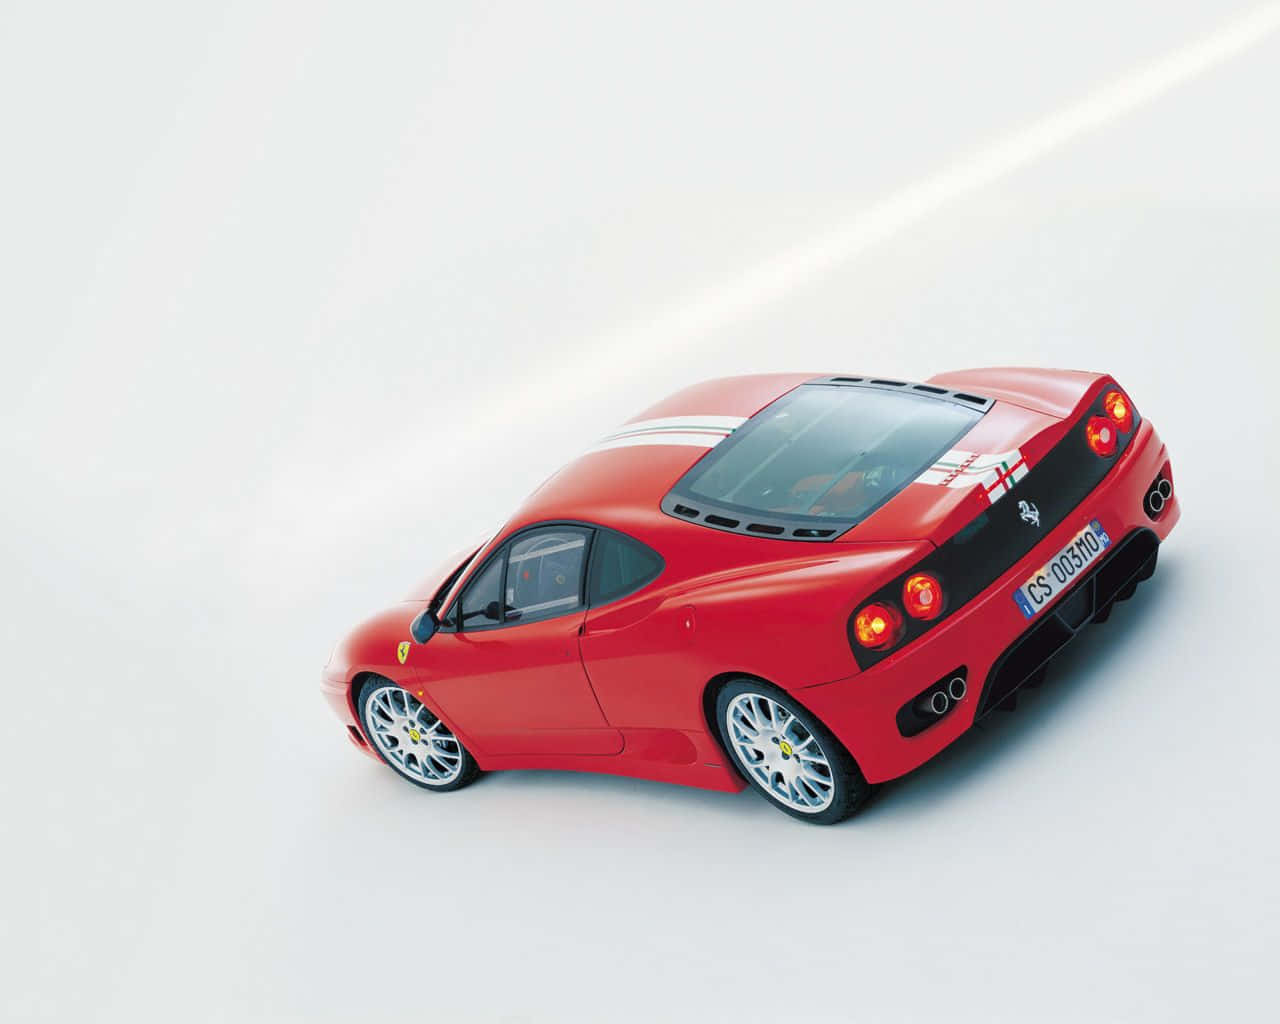 Ferrari 360 Modena 1280 X 1024 Wallpaper Wallpaper